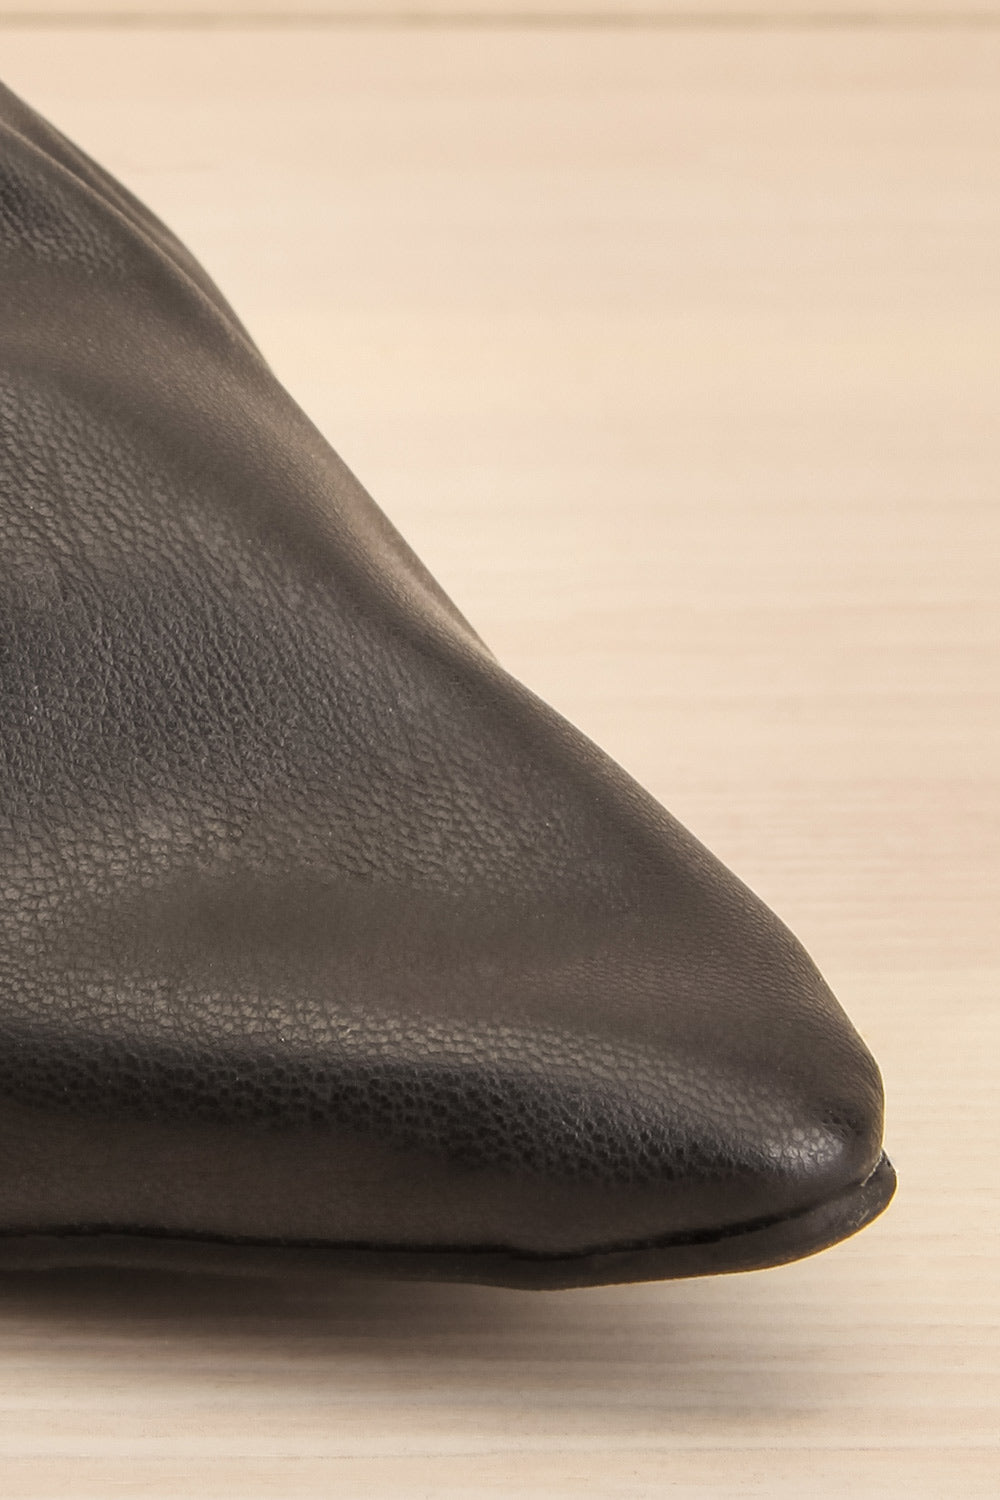 Vancouver Black Faux-Leather Pointed Toe Mules | La petite garçonne front close-up